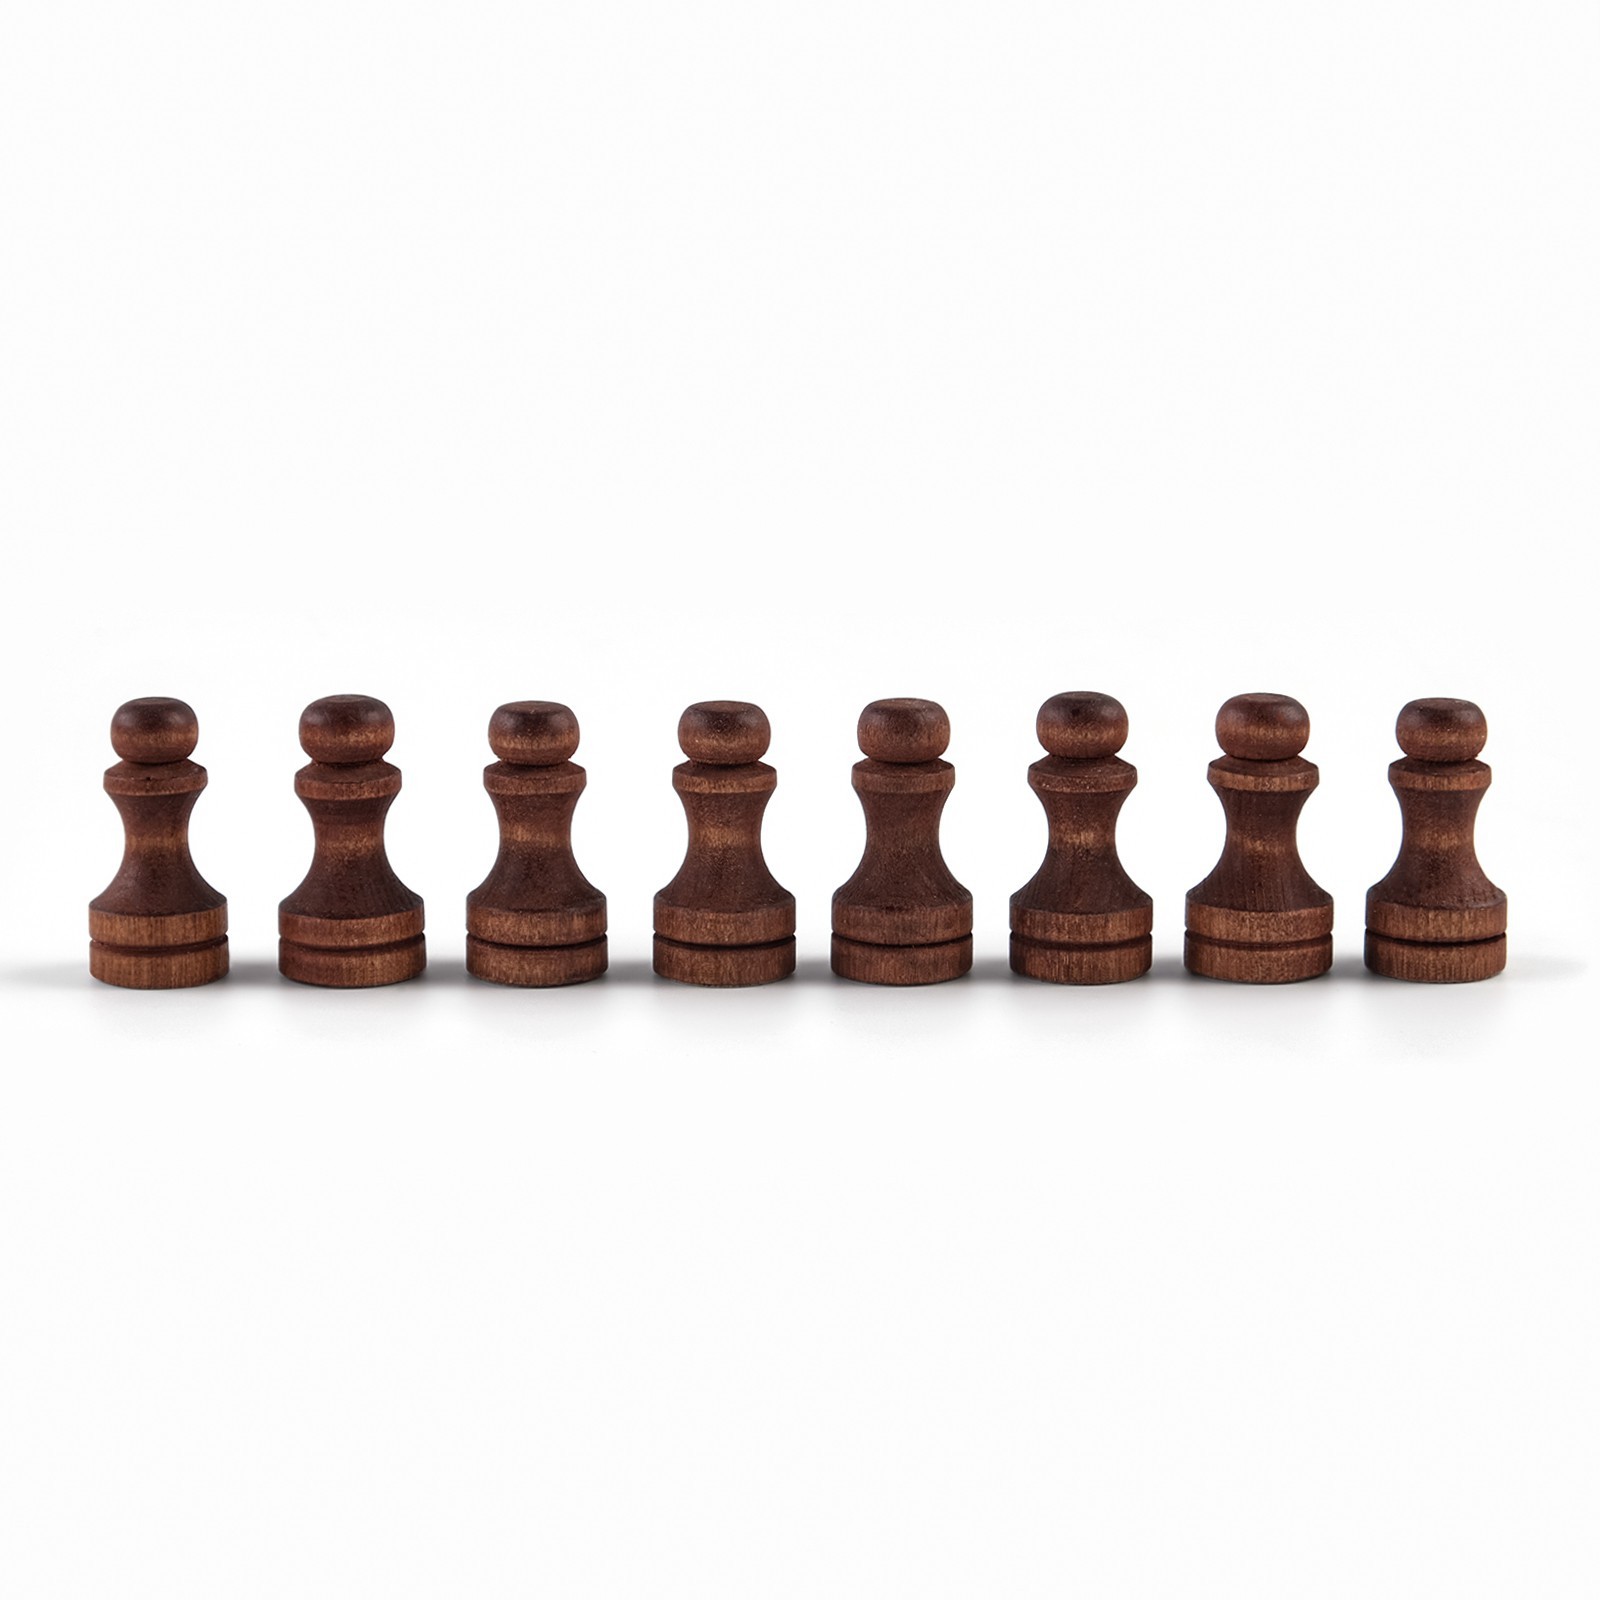 Шахматные фигуры Sima-Land обиходные король h 7 см d 2 4 см пешка h 4 4 см d 2 4 см - фото 3